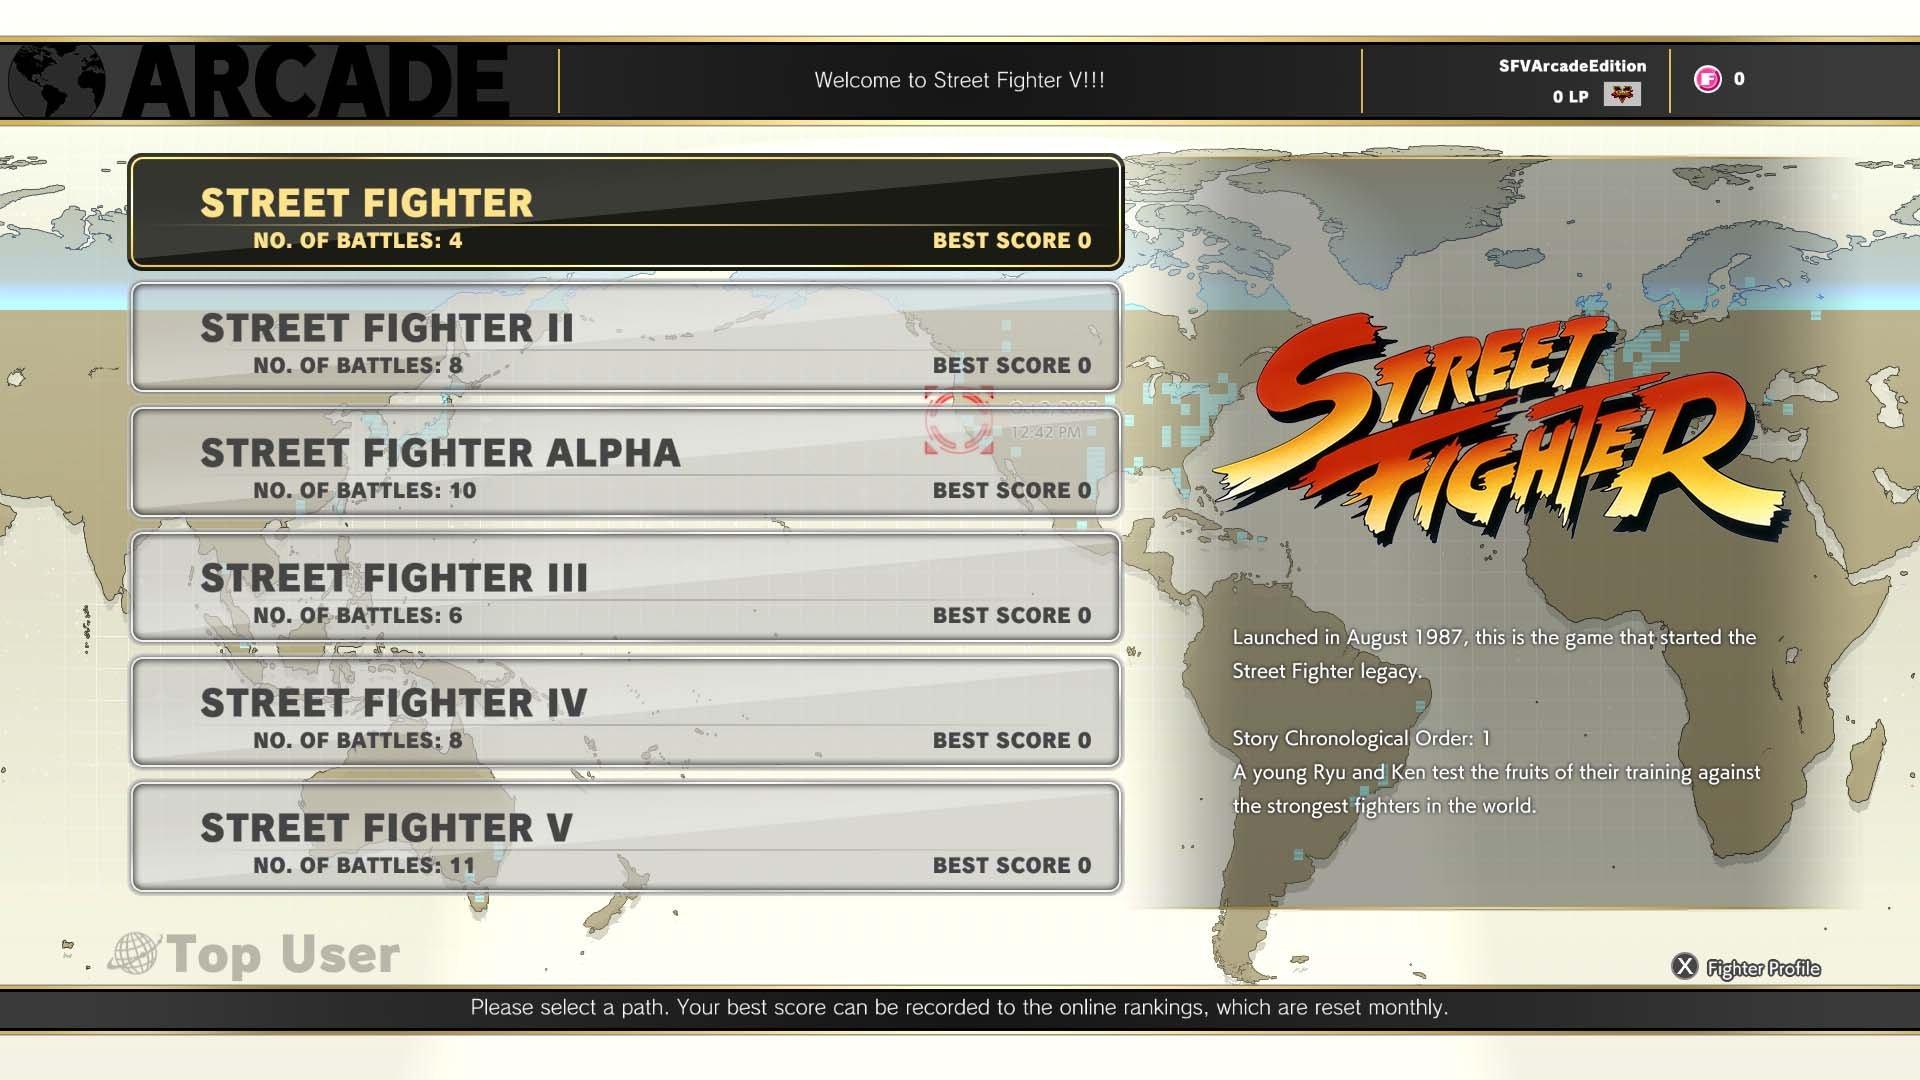  Street Fighter V (Playstation 4) : Movies & TV